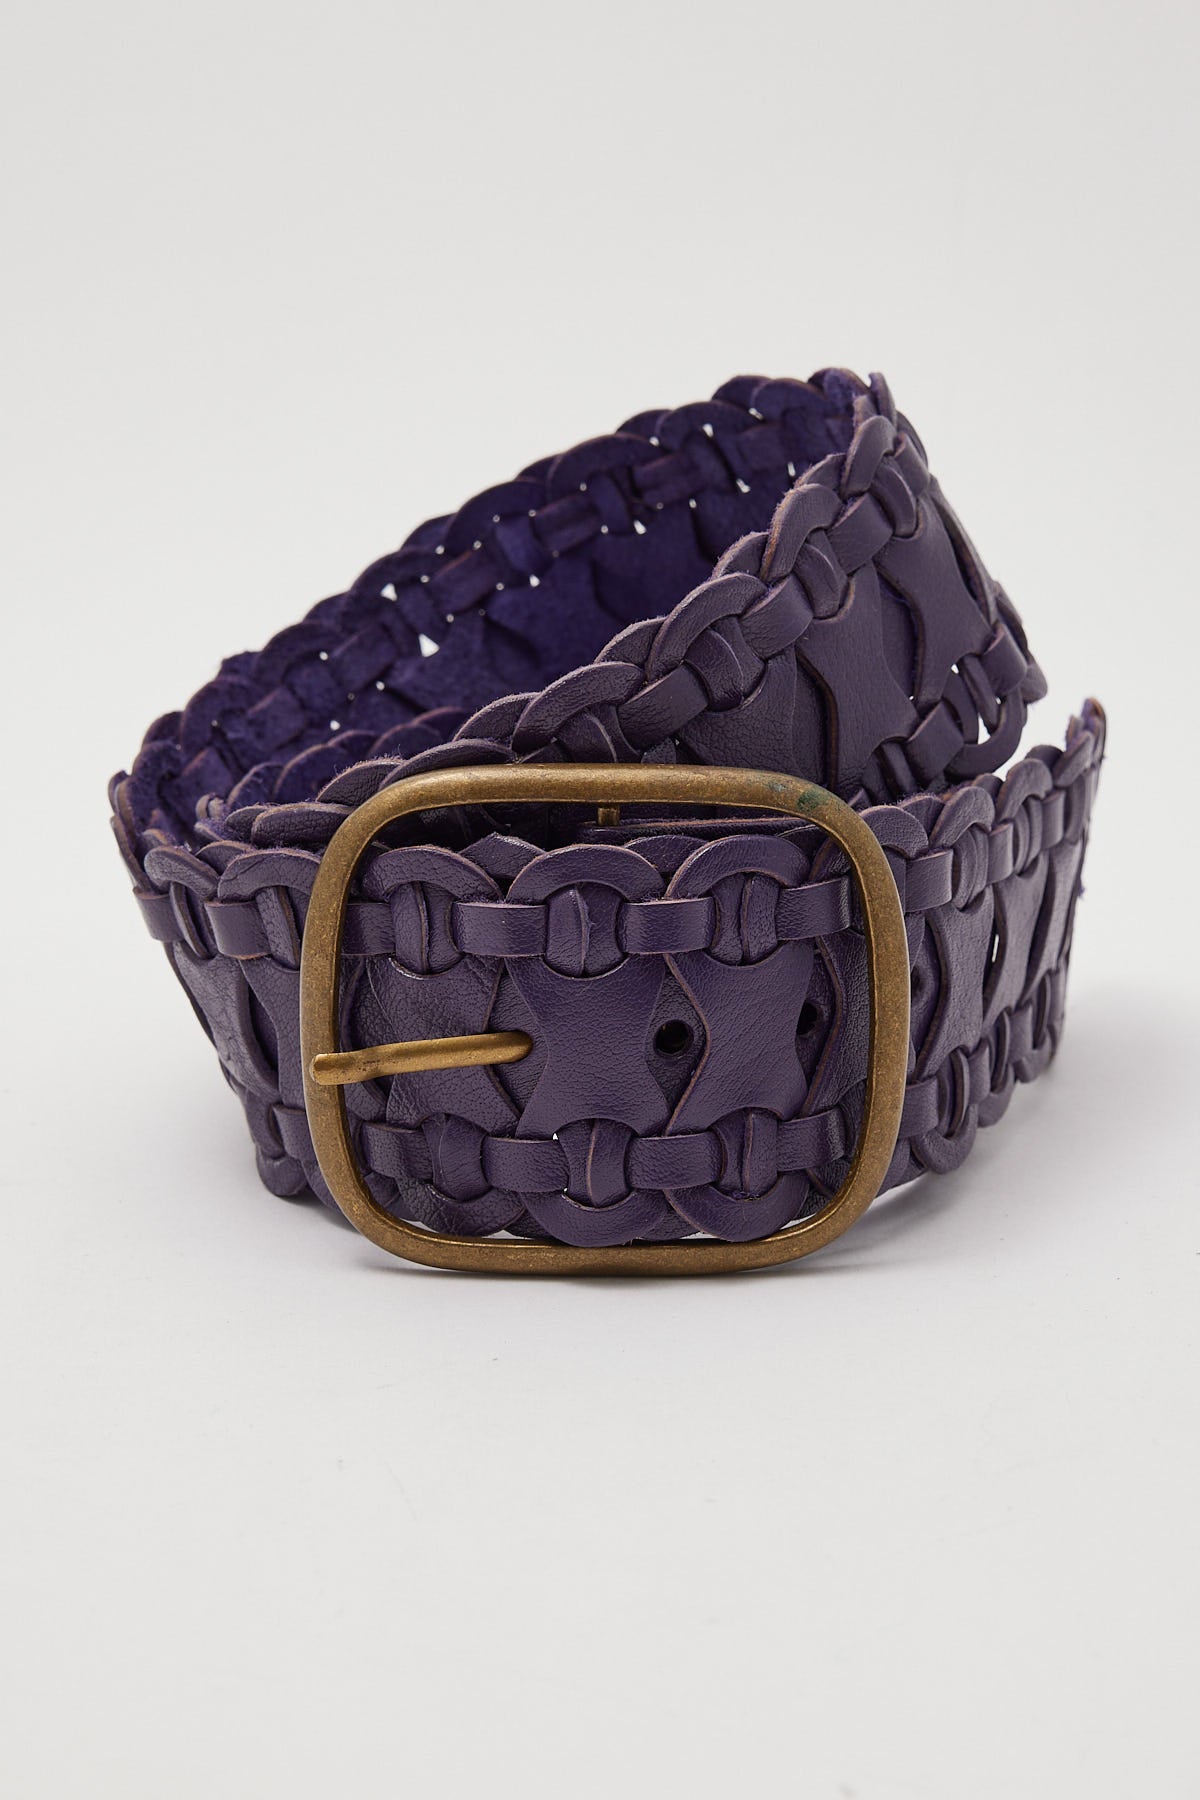 Dakota 501 Vintage Deadstock Woven Leather Belt Purple/Gold